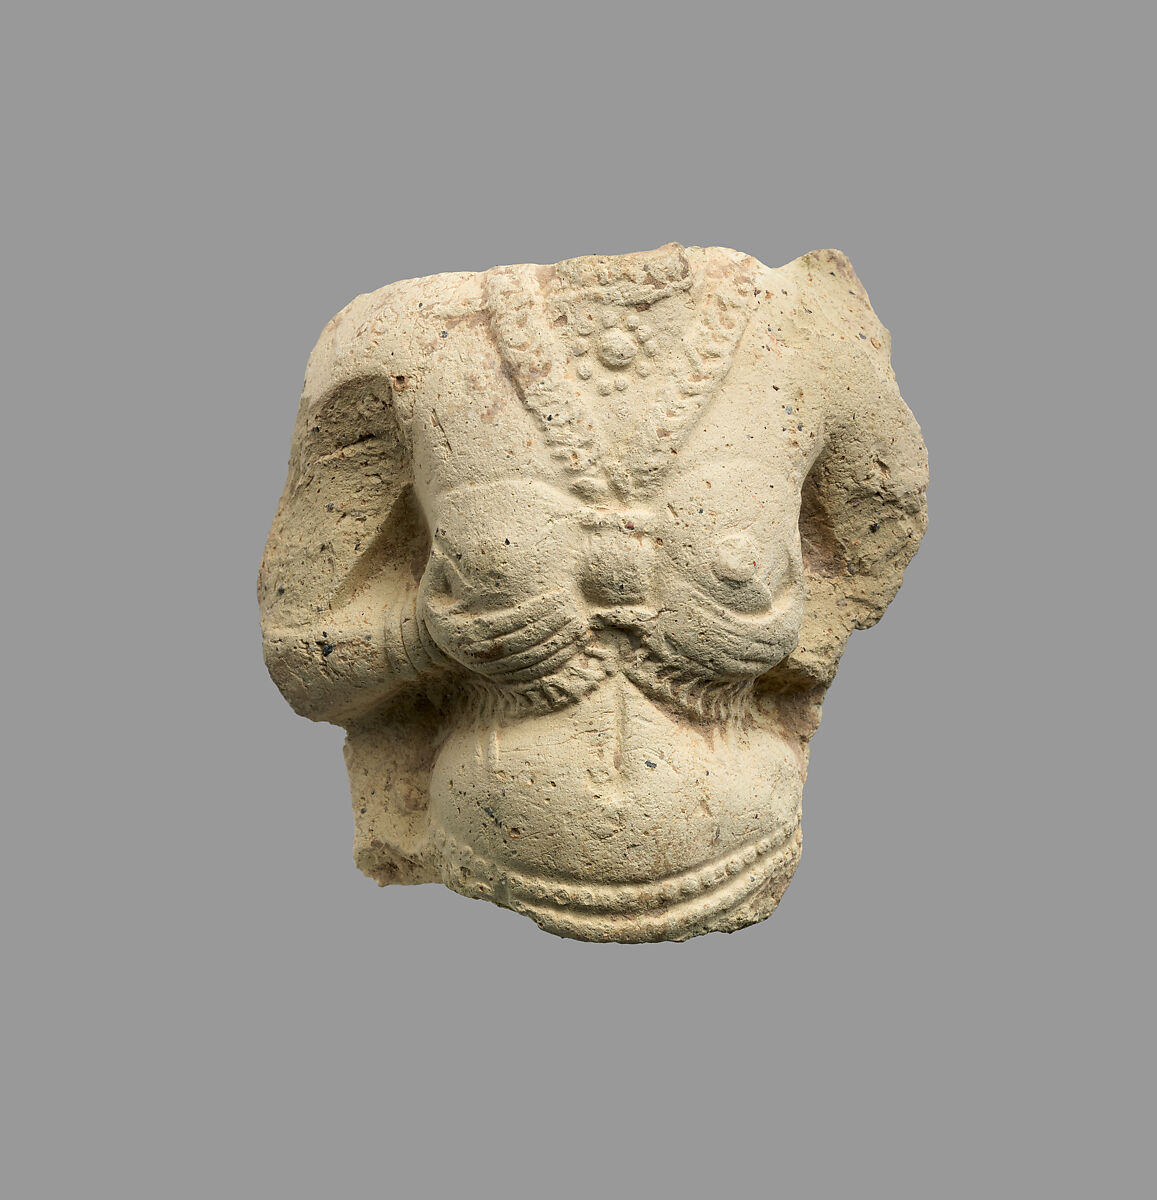 Figurine, Ceramic, Elamite 